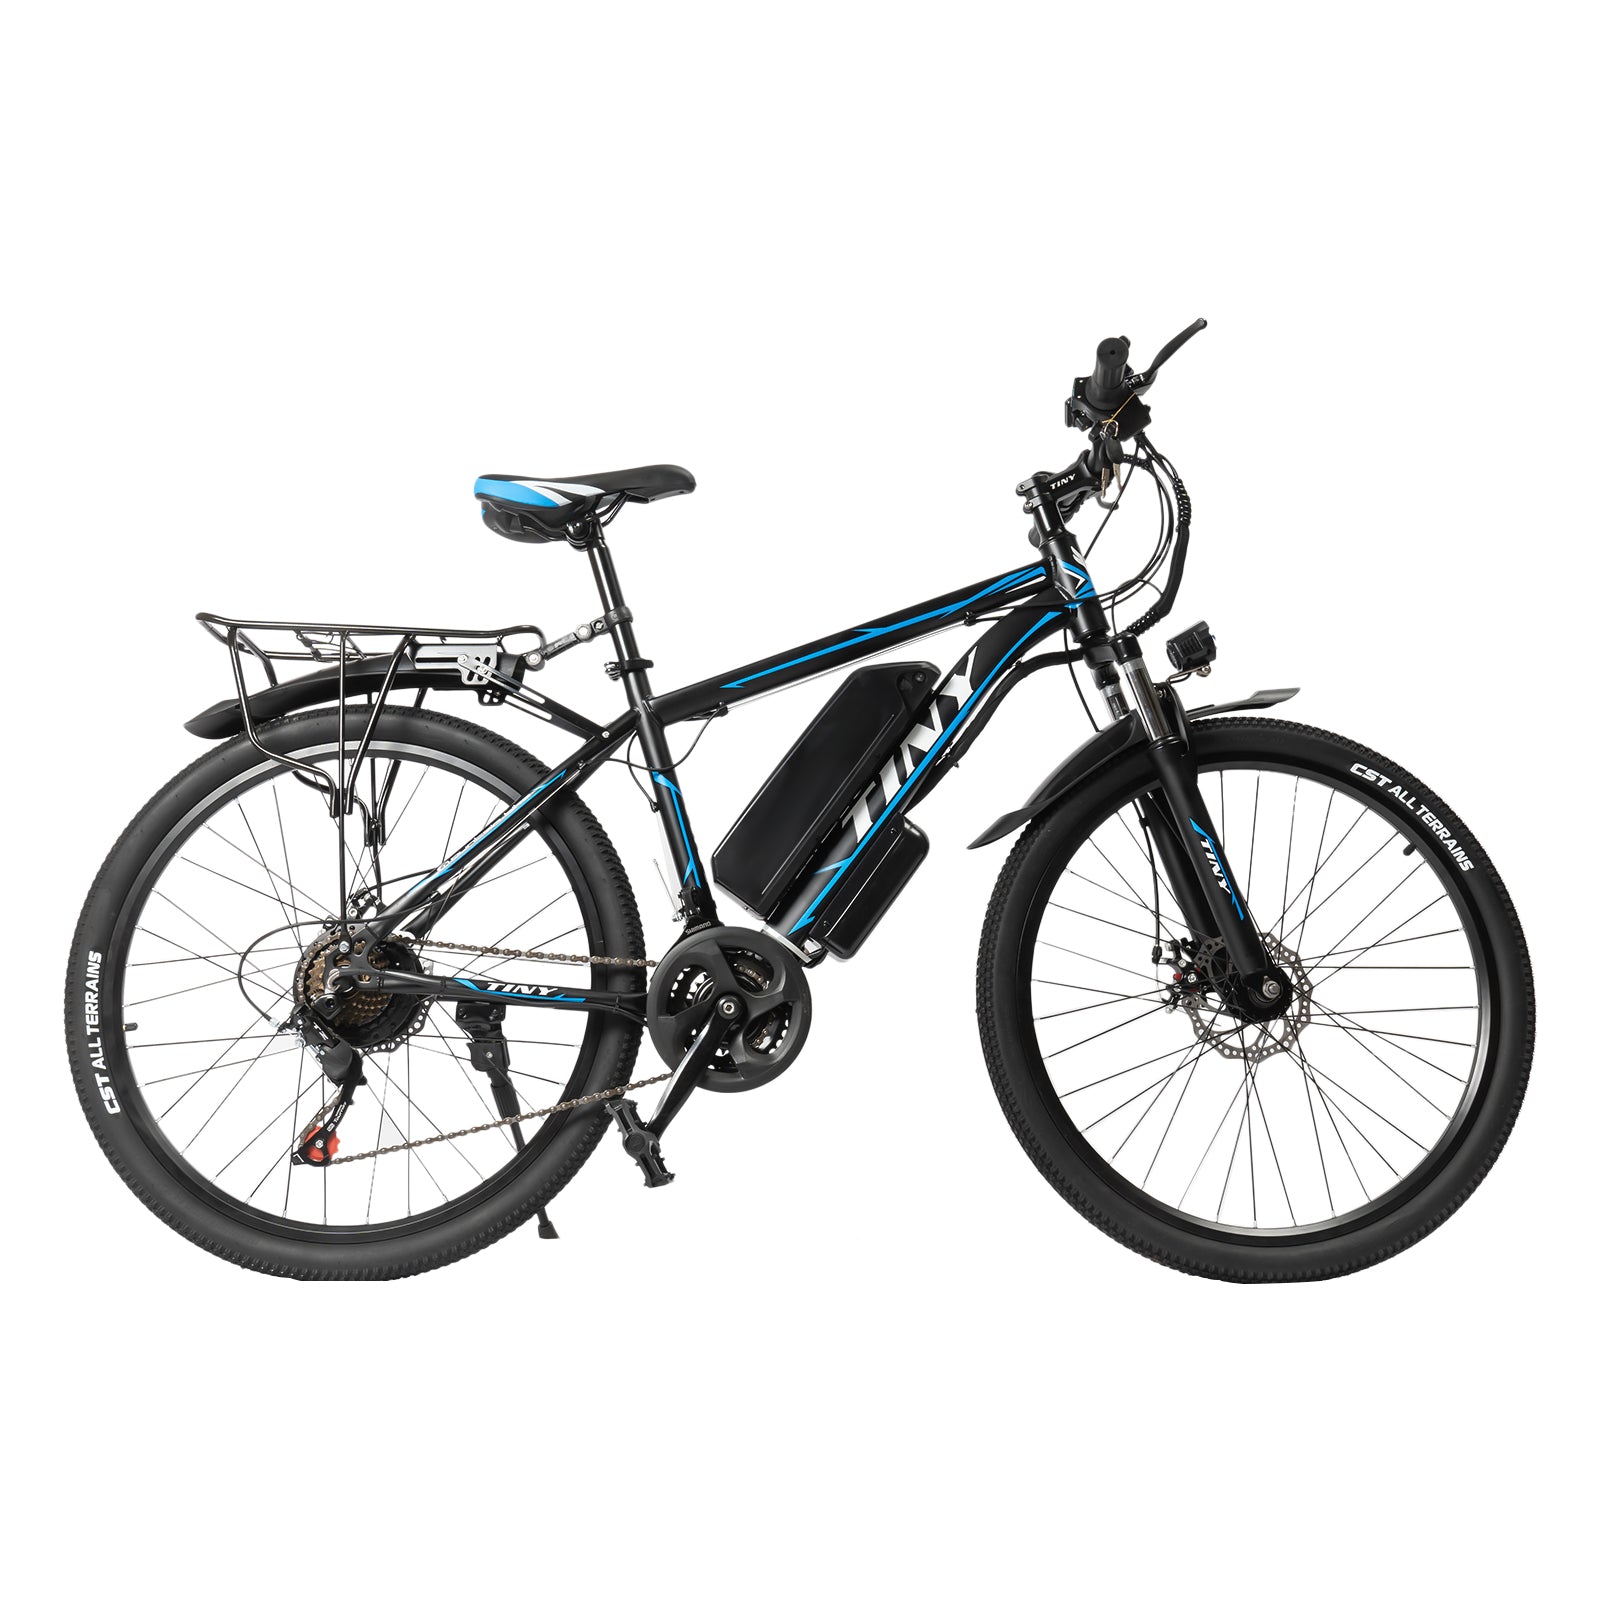 Mountain bike 26 pollici bicicletta elettrica con display LCD mountain bike elettrica 250 W motore e 21 velocità bici elettrica